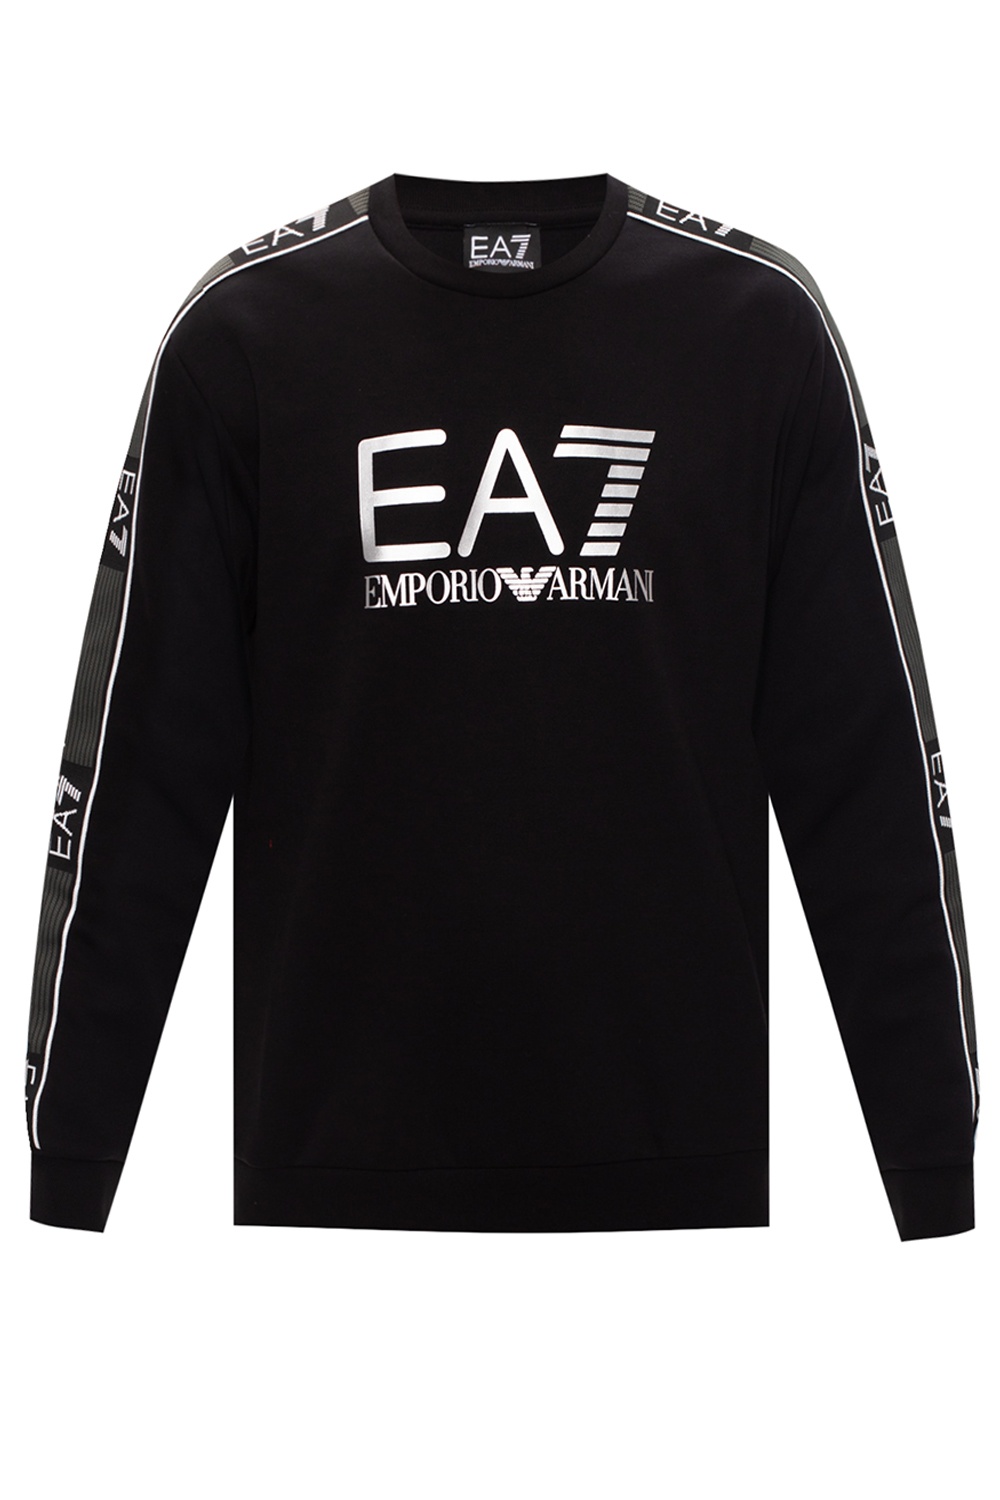 gris EA7 Men/'s Graphic Sweat-shirt